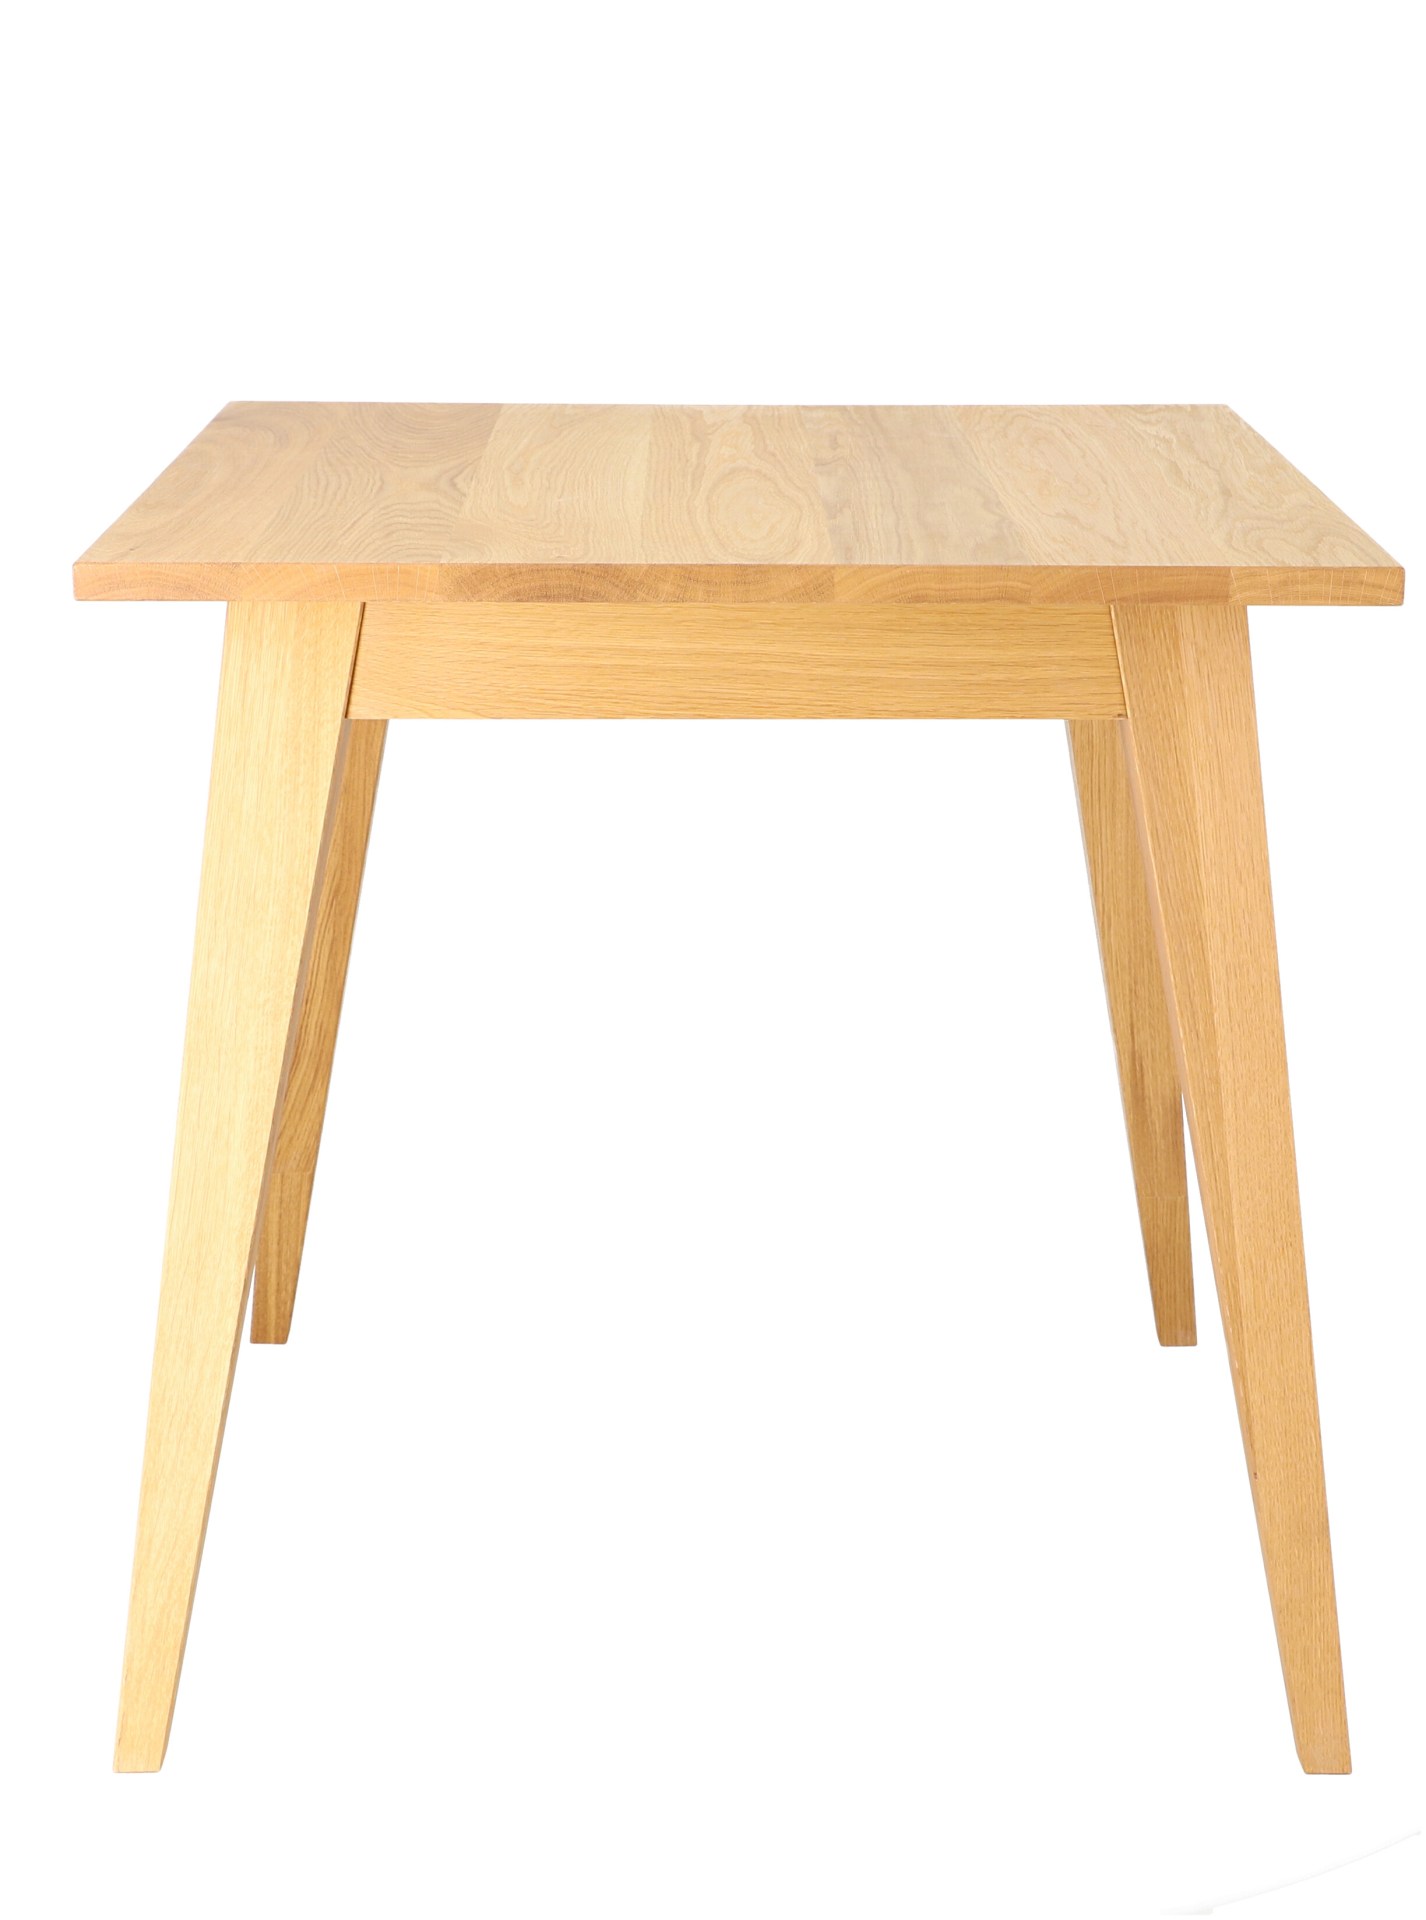 Der Esstisch Xaver hat ein schlichtes und zeitloses Auftreten. Hergestellt wurde der Tisch von der Marke Jan Kurtz. Gefertigt wurde er aus Massiver Eiche und Echtholzfurnier. Die Tischplatte hat eine Länge von 150 cm.